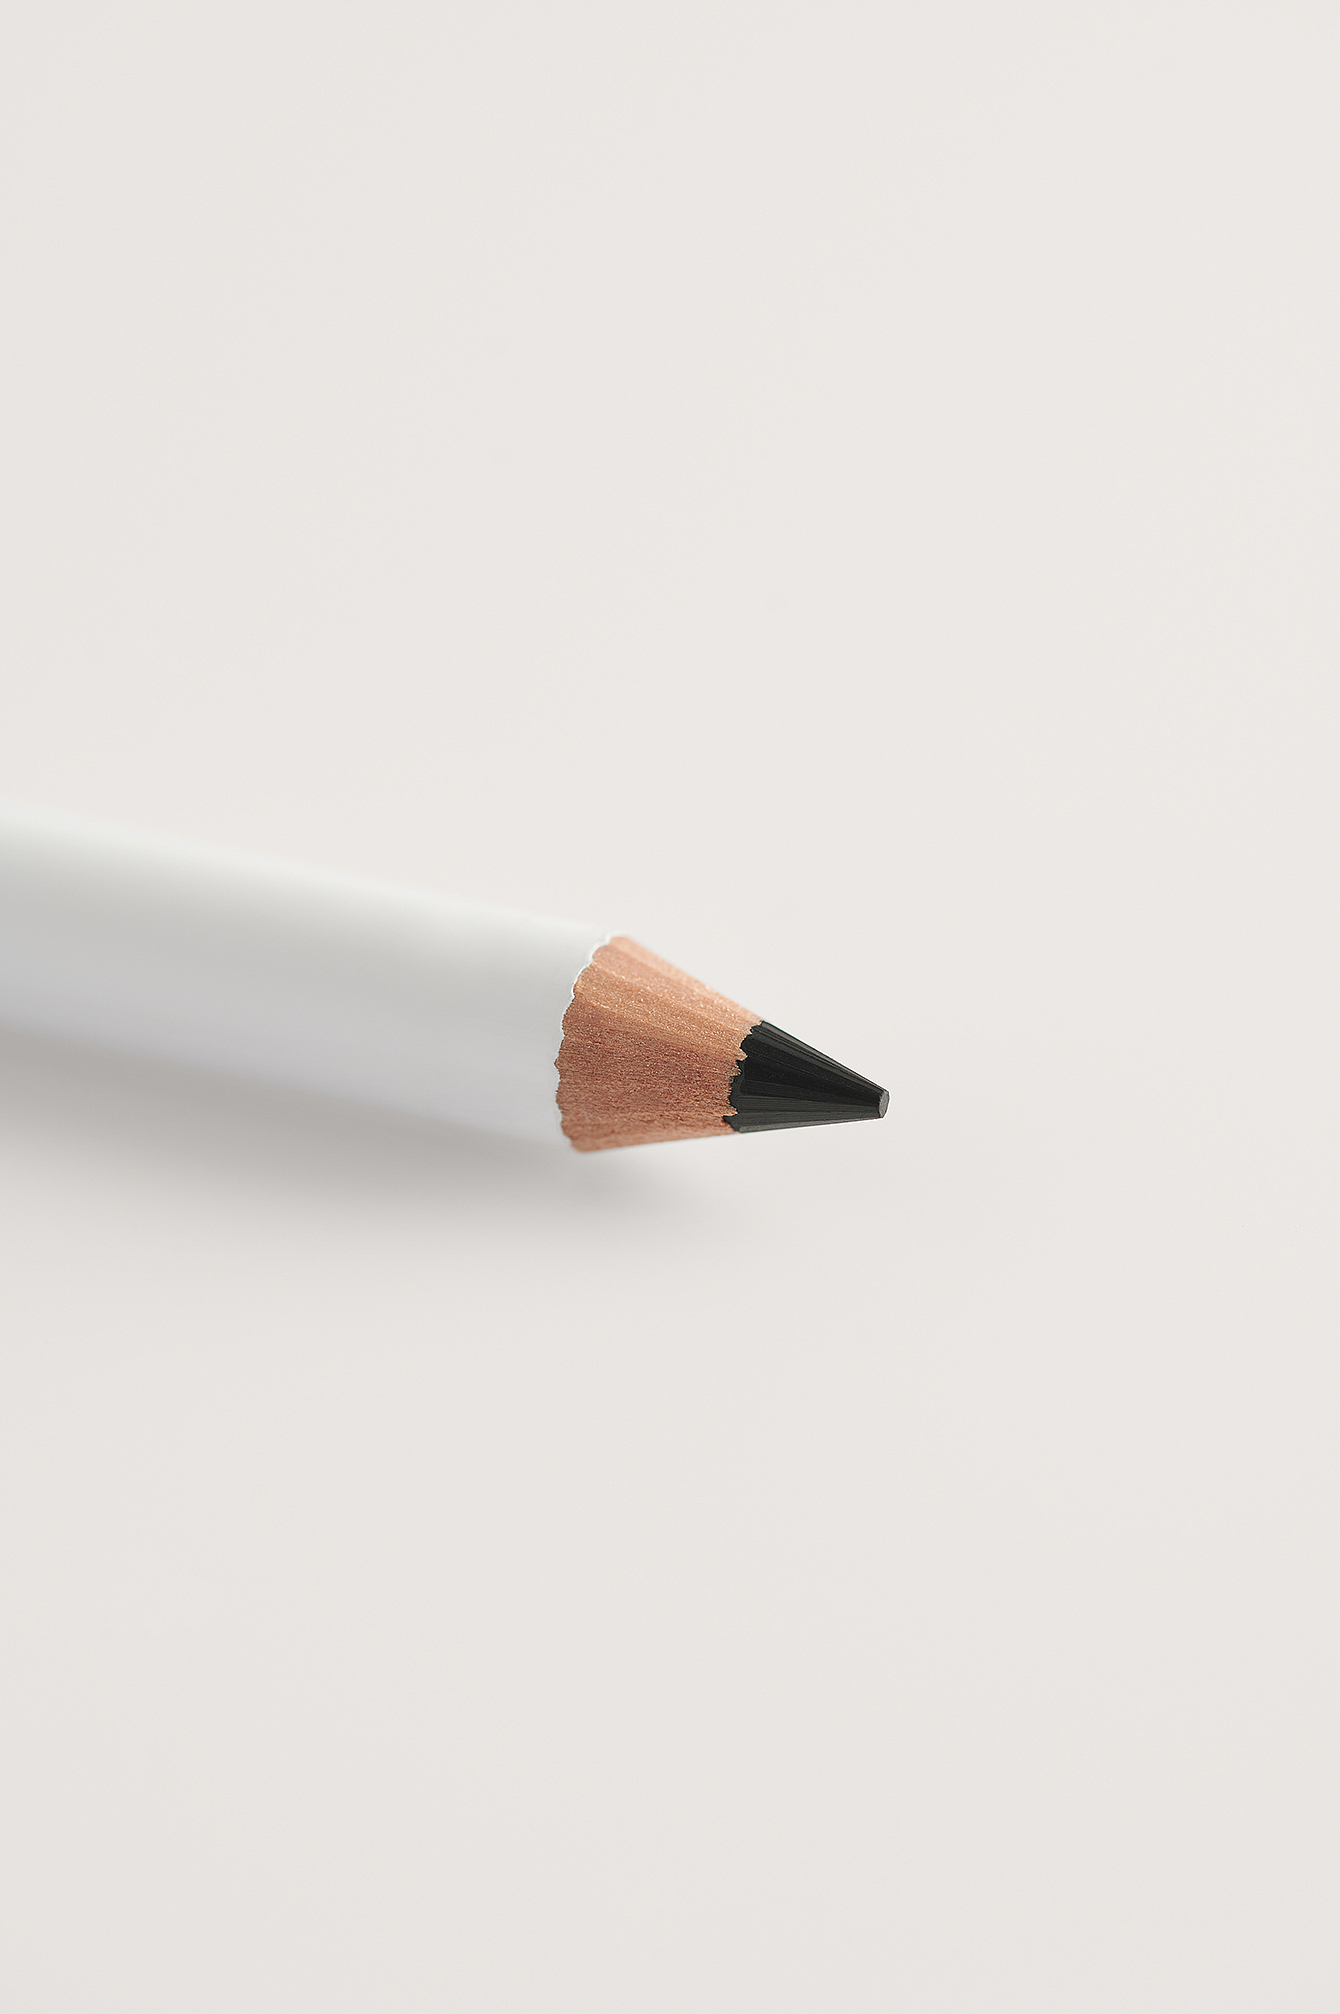 Black Eye Pencil